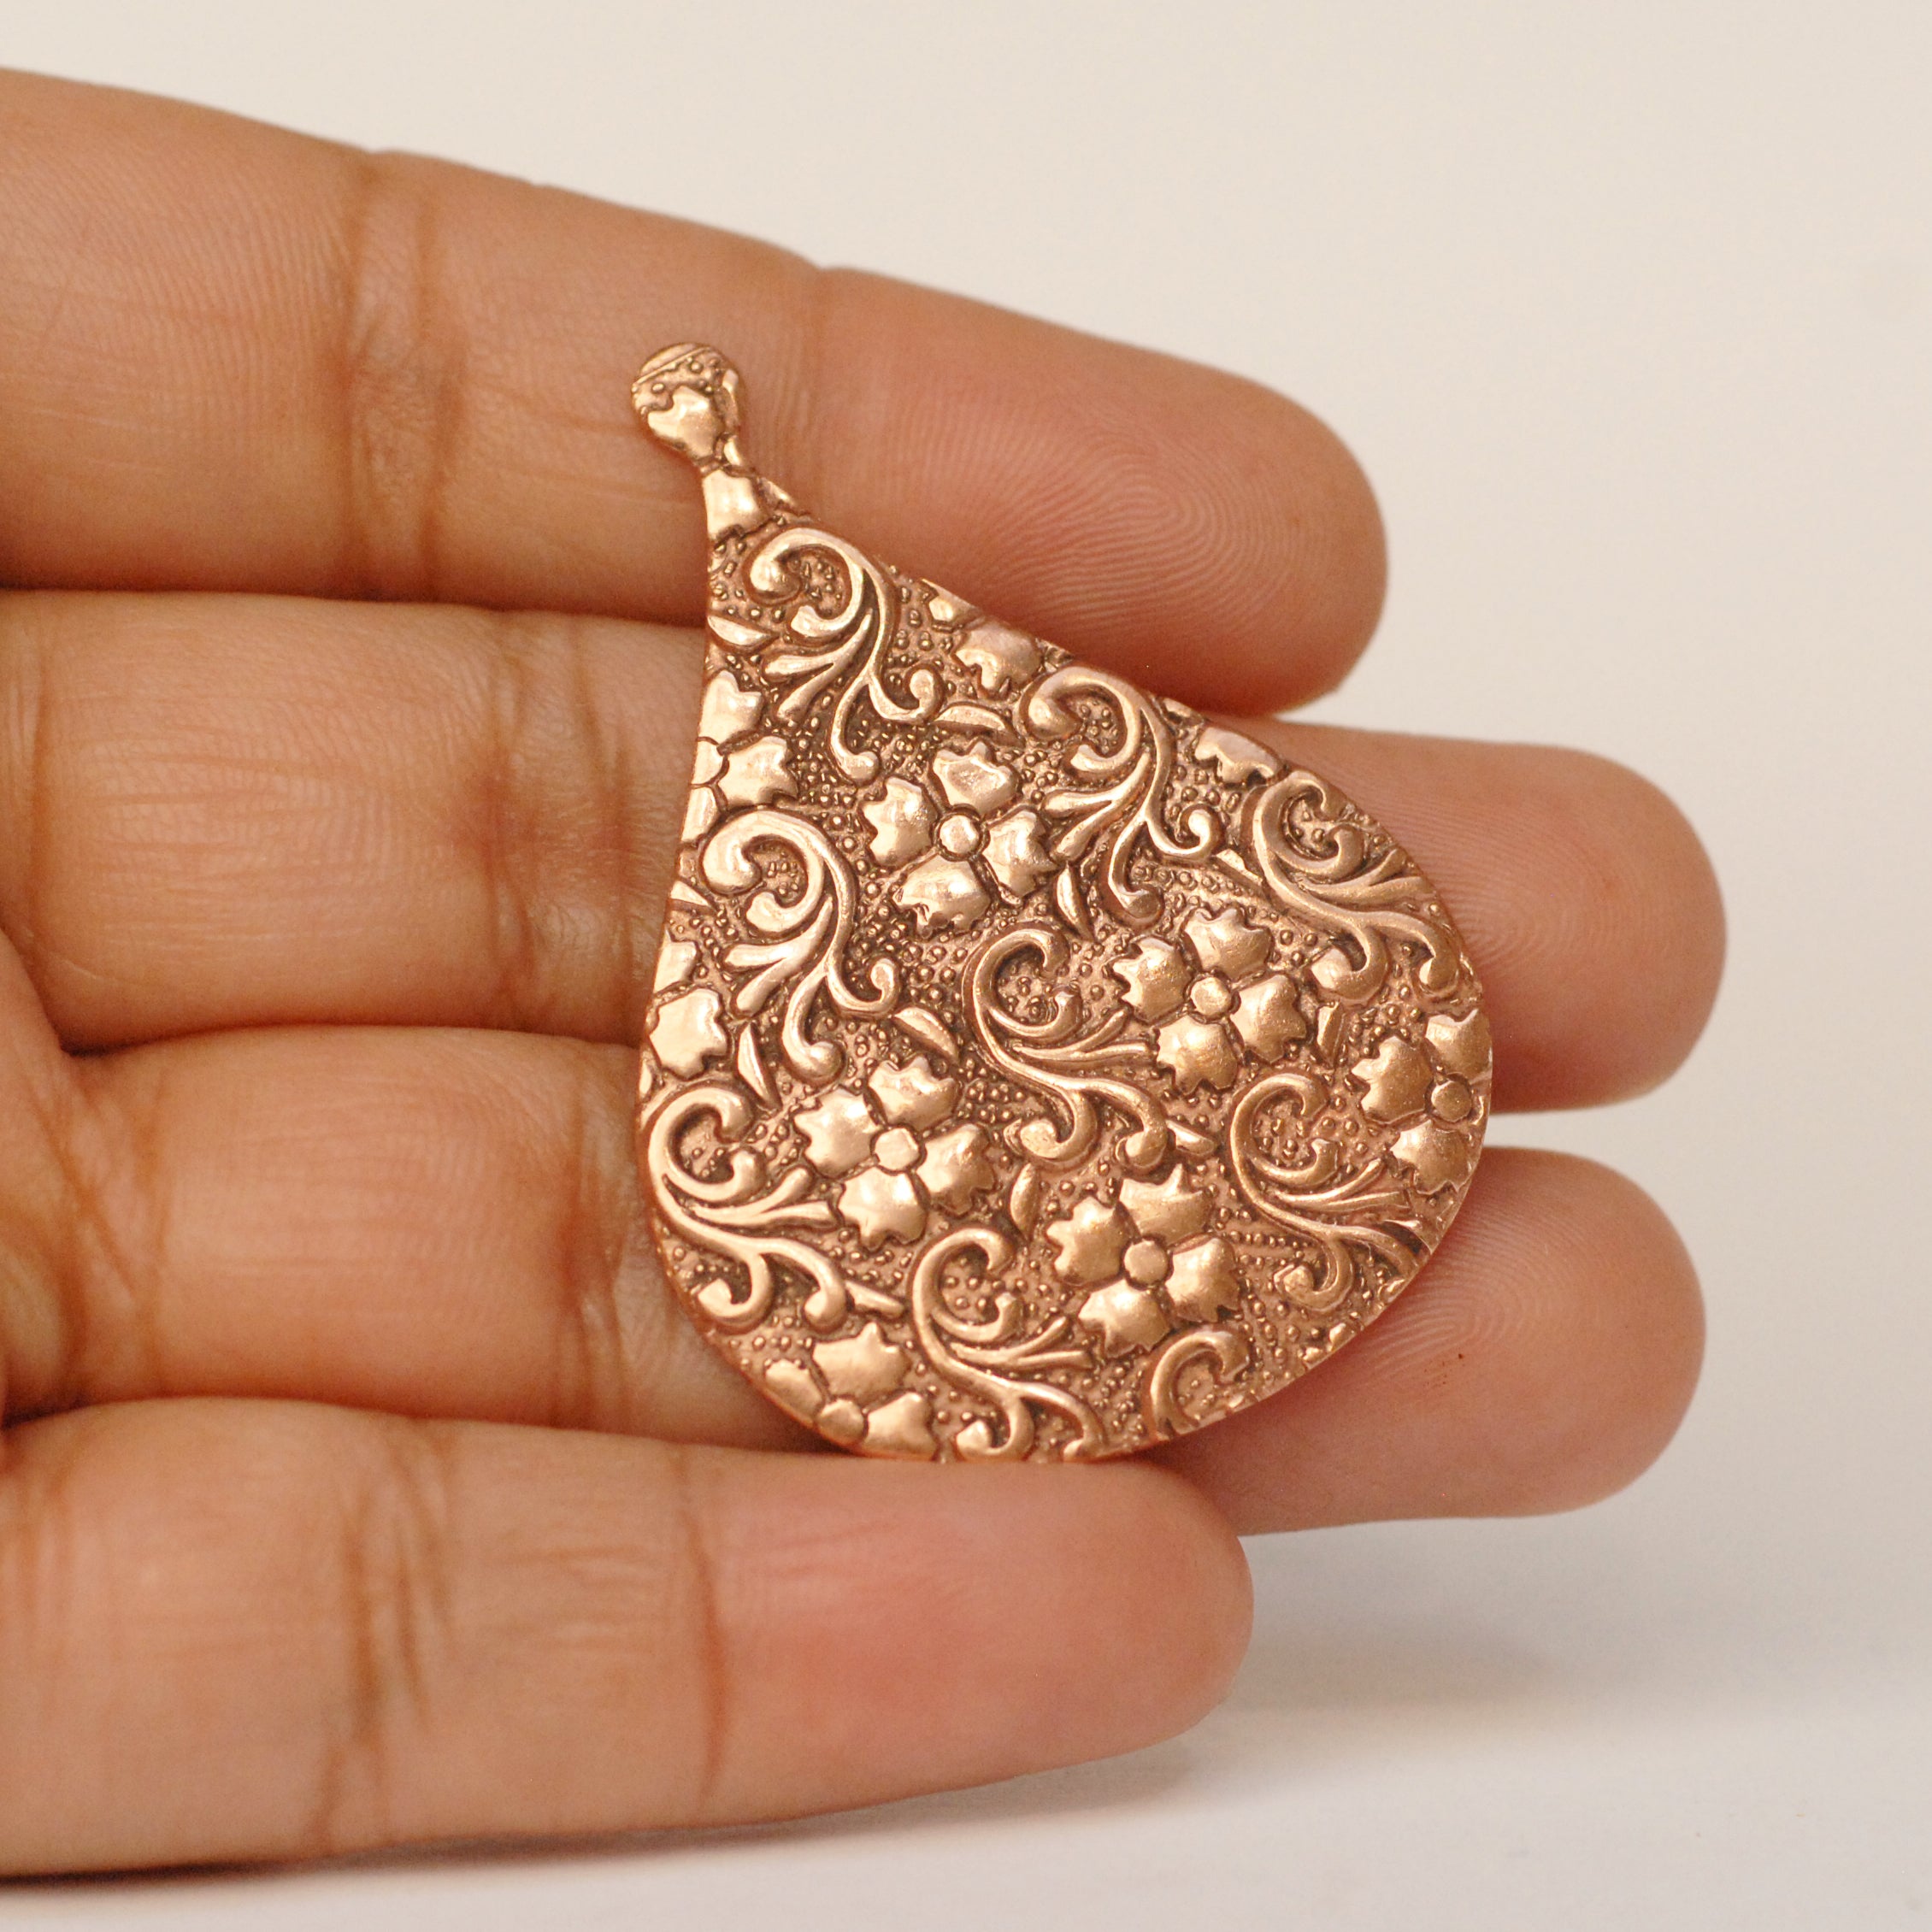 Arabic teardrop shape w/ batik floral texture metal blanks for earrings or for pendants